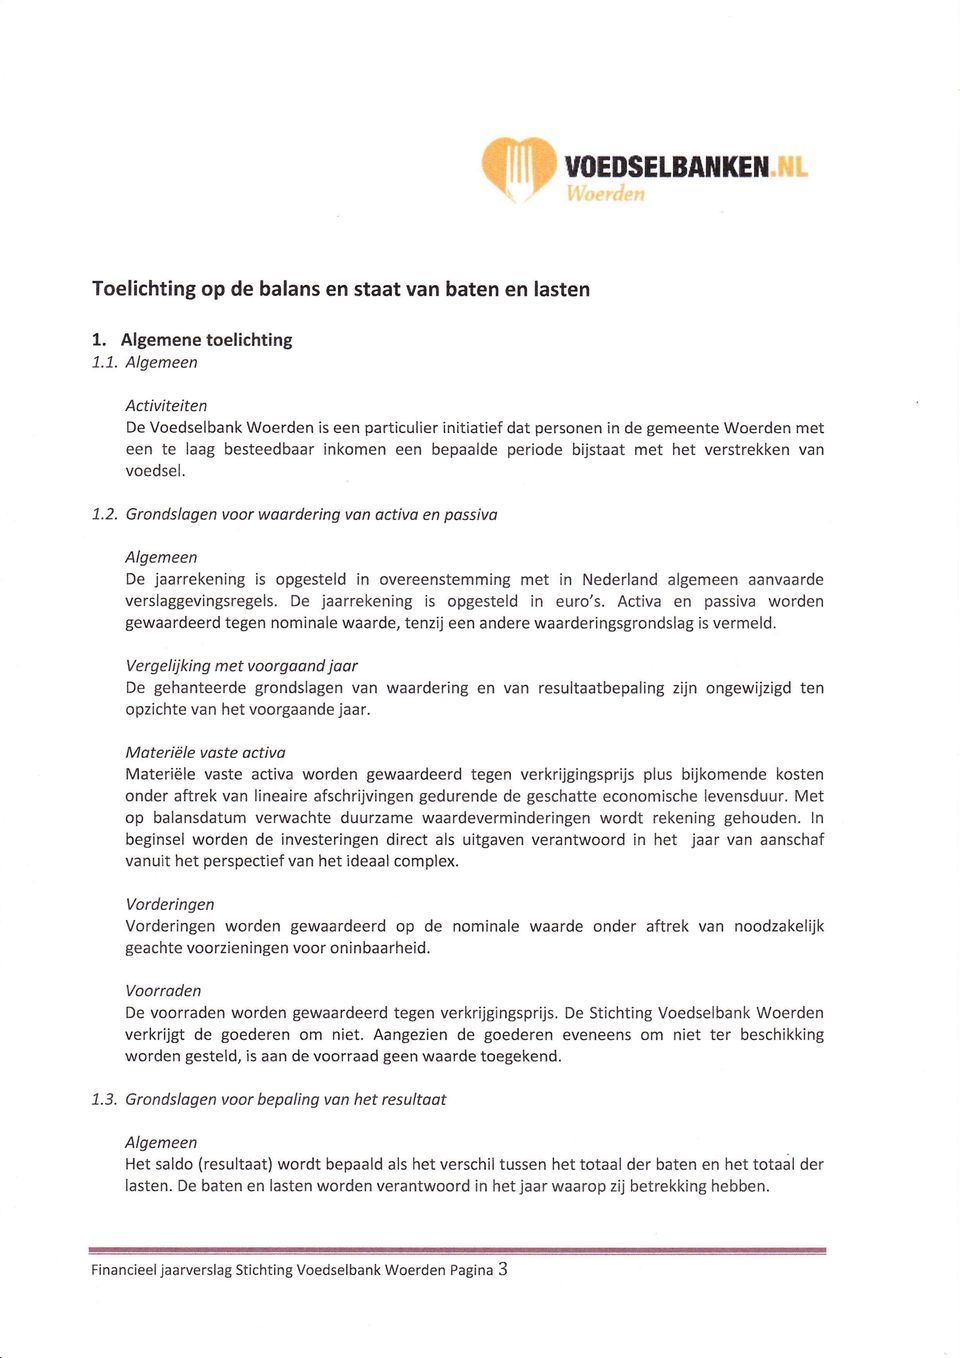 van voedsel. 1.2. Grondslogen voor woardering von activo en passivo Algemeen De jaarrekening is opgesteld in overeenstemming met in Nederland algemeen aanvaarde verslaggevingsregels.